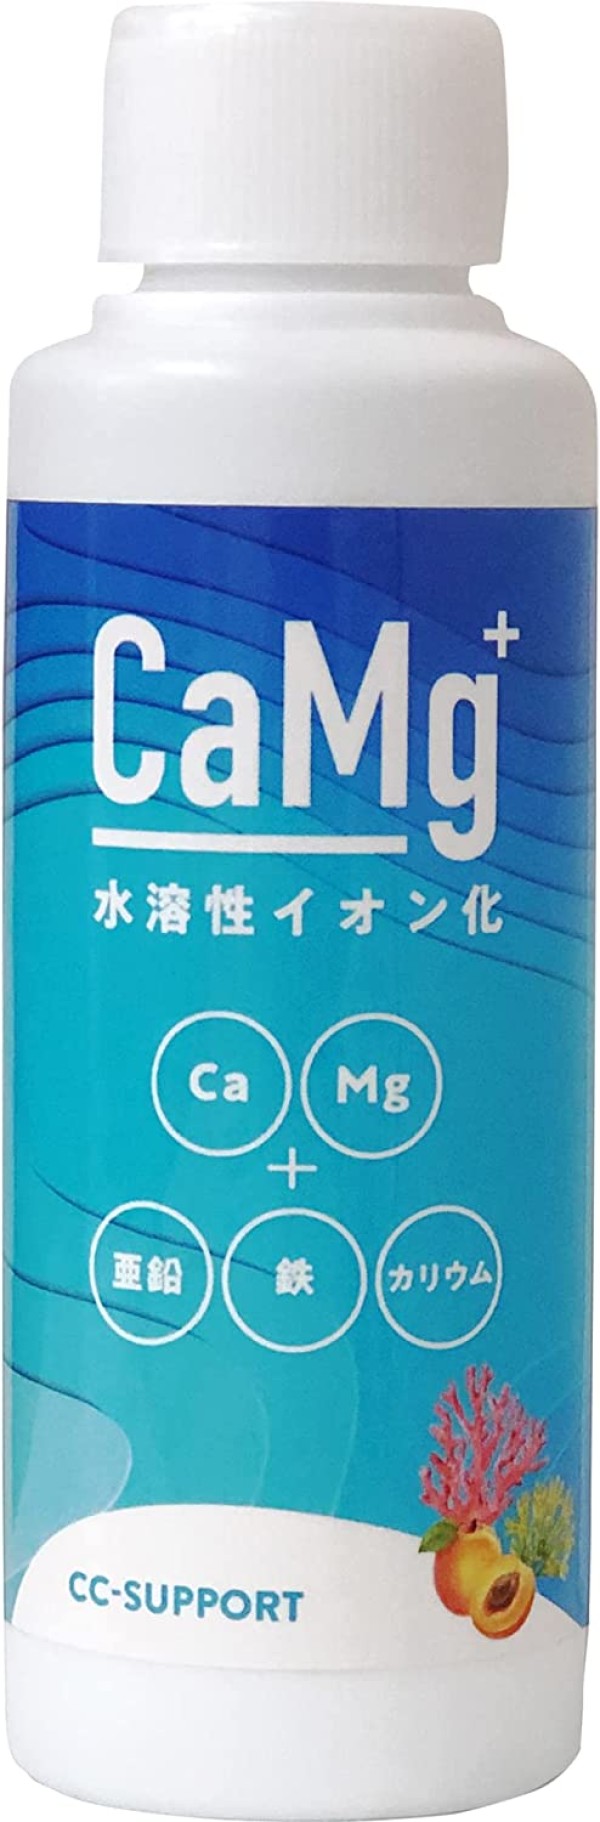 Высококонцентрированные питьевые минералы CC-SUPPORT High Concentration Multi-Mineral CaMg+